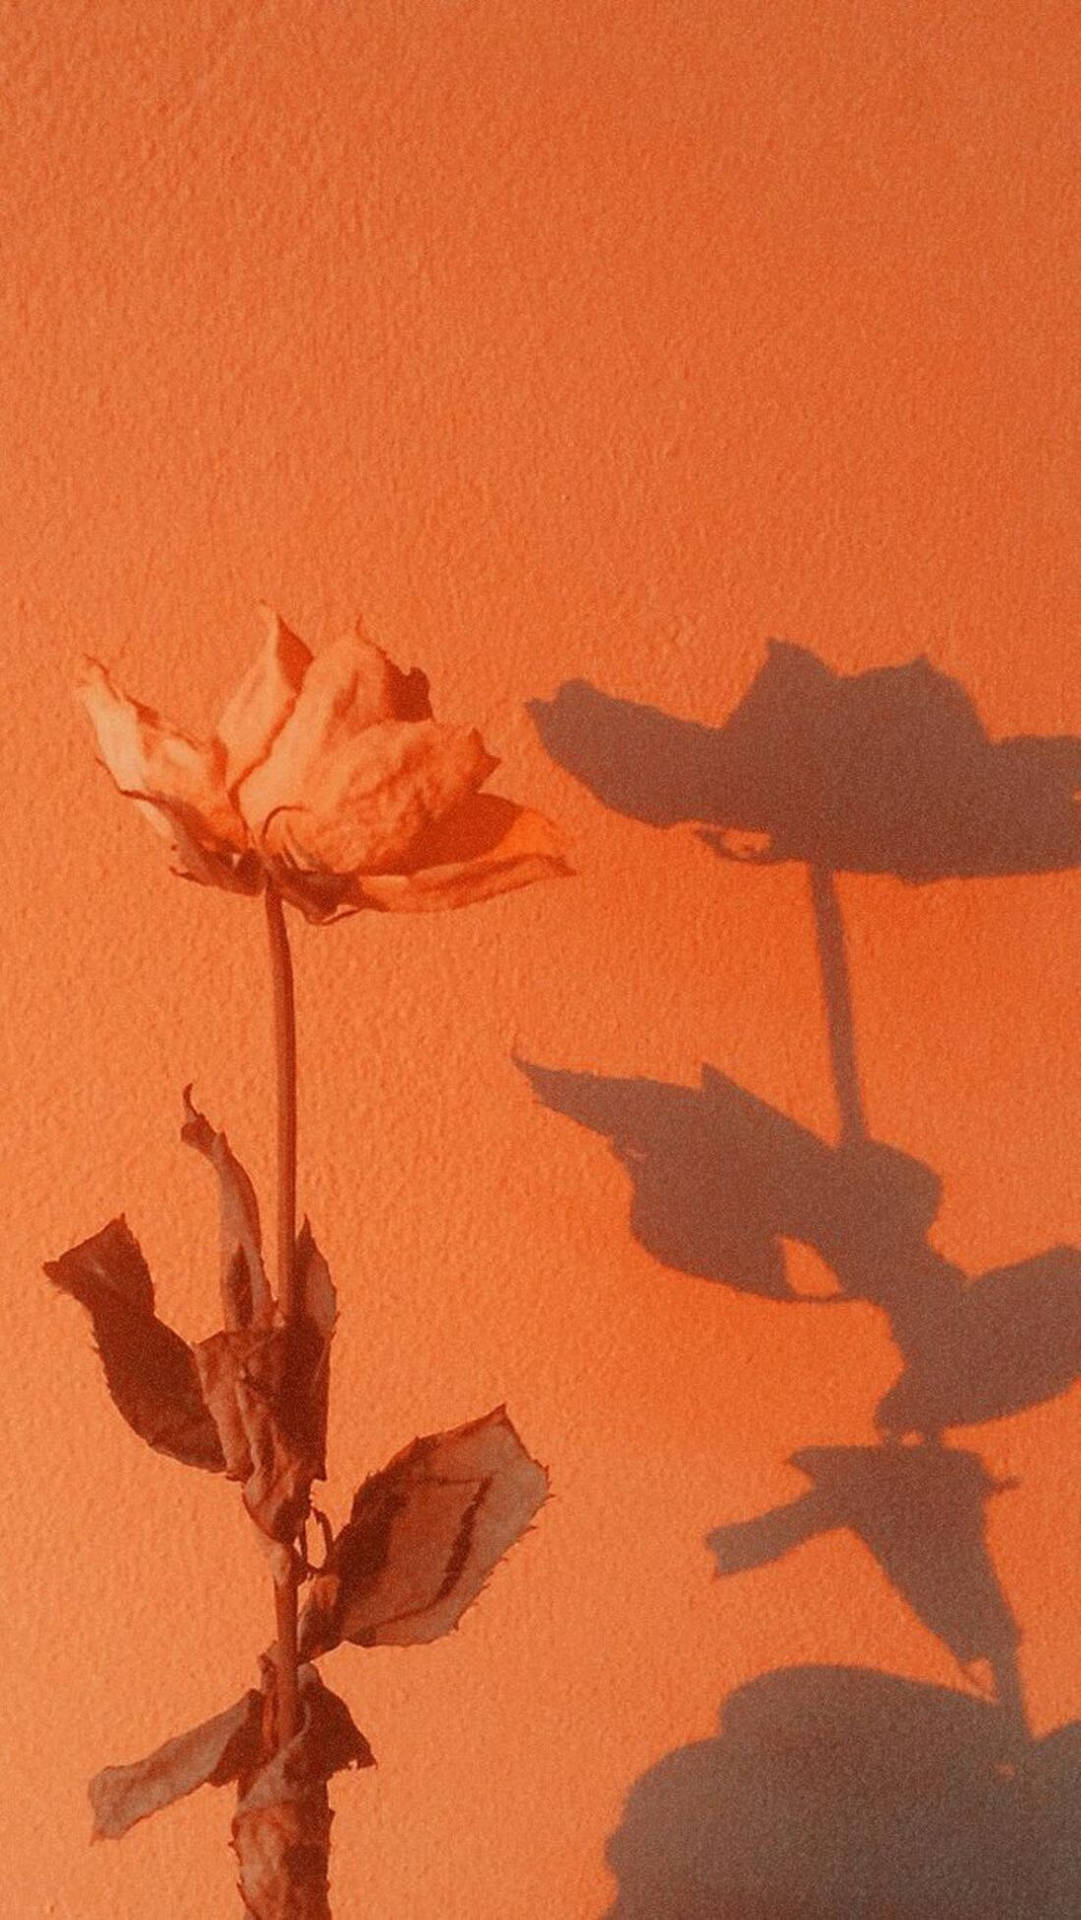 A dried rose in front of an orange wall - Orange, dark orange